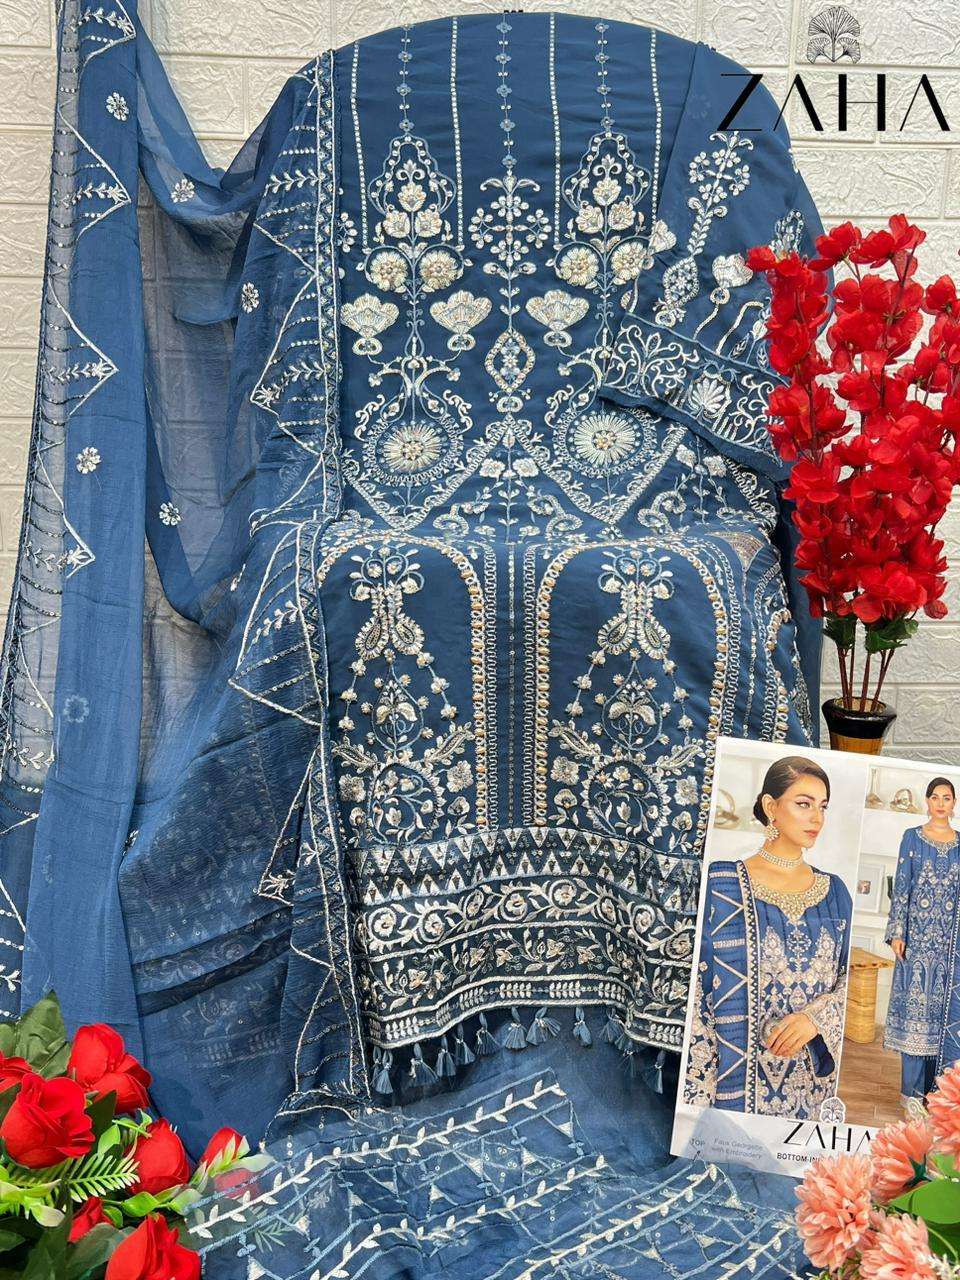 Zaha 10270 A And B Georgette Embroidery Salwar Kameez Wholesale catalog